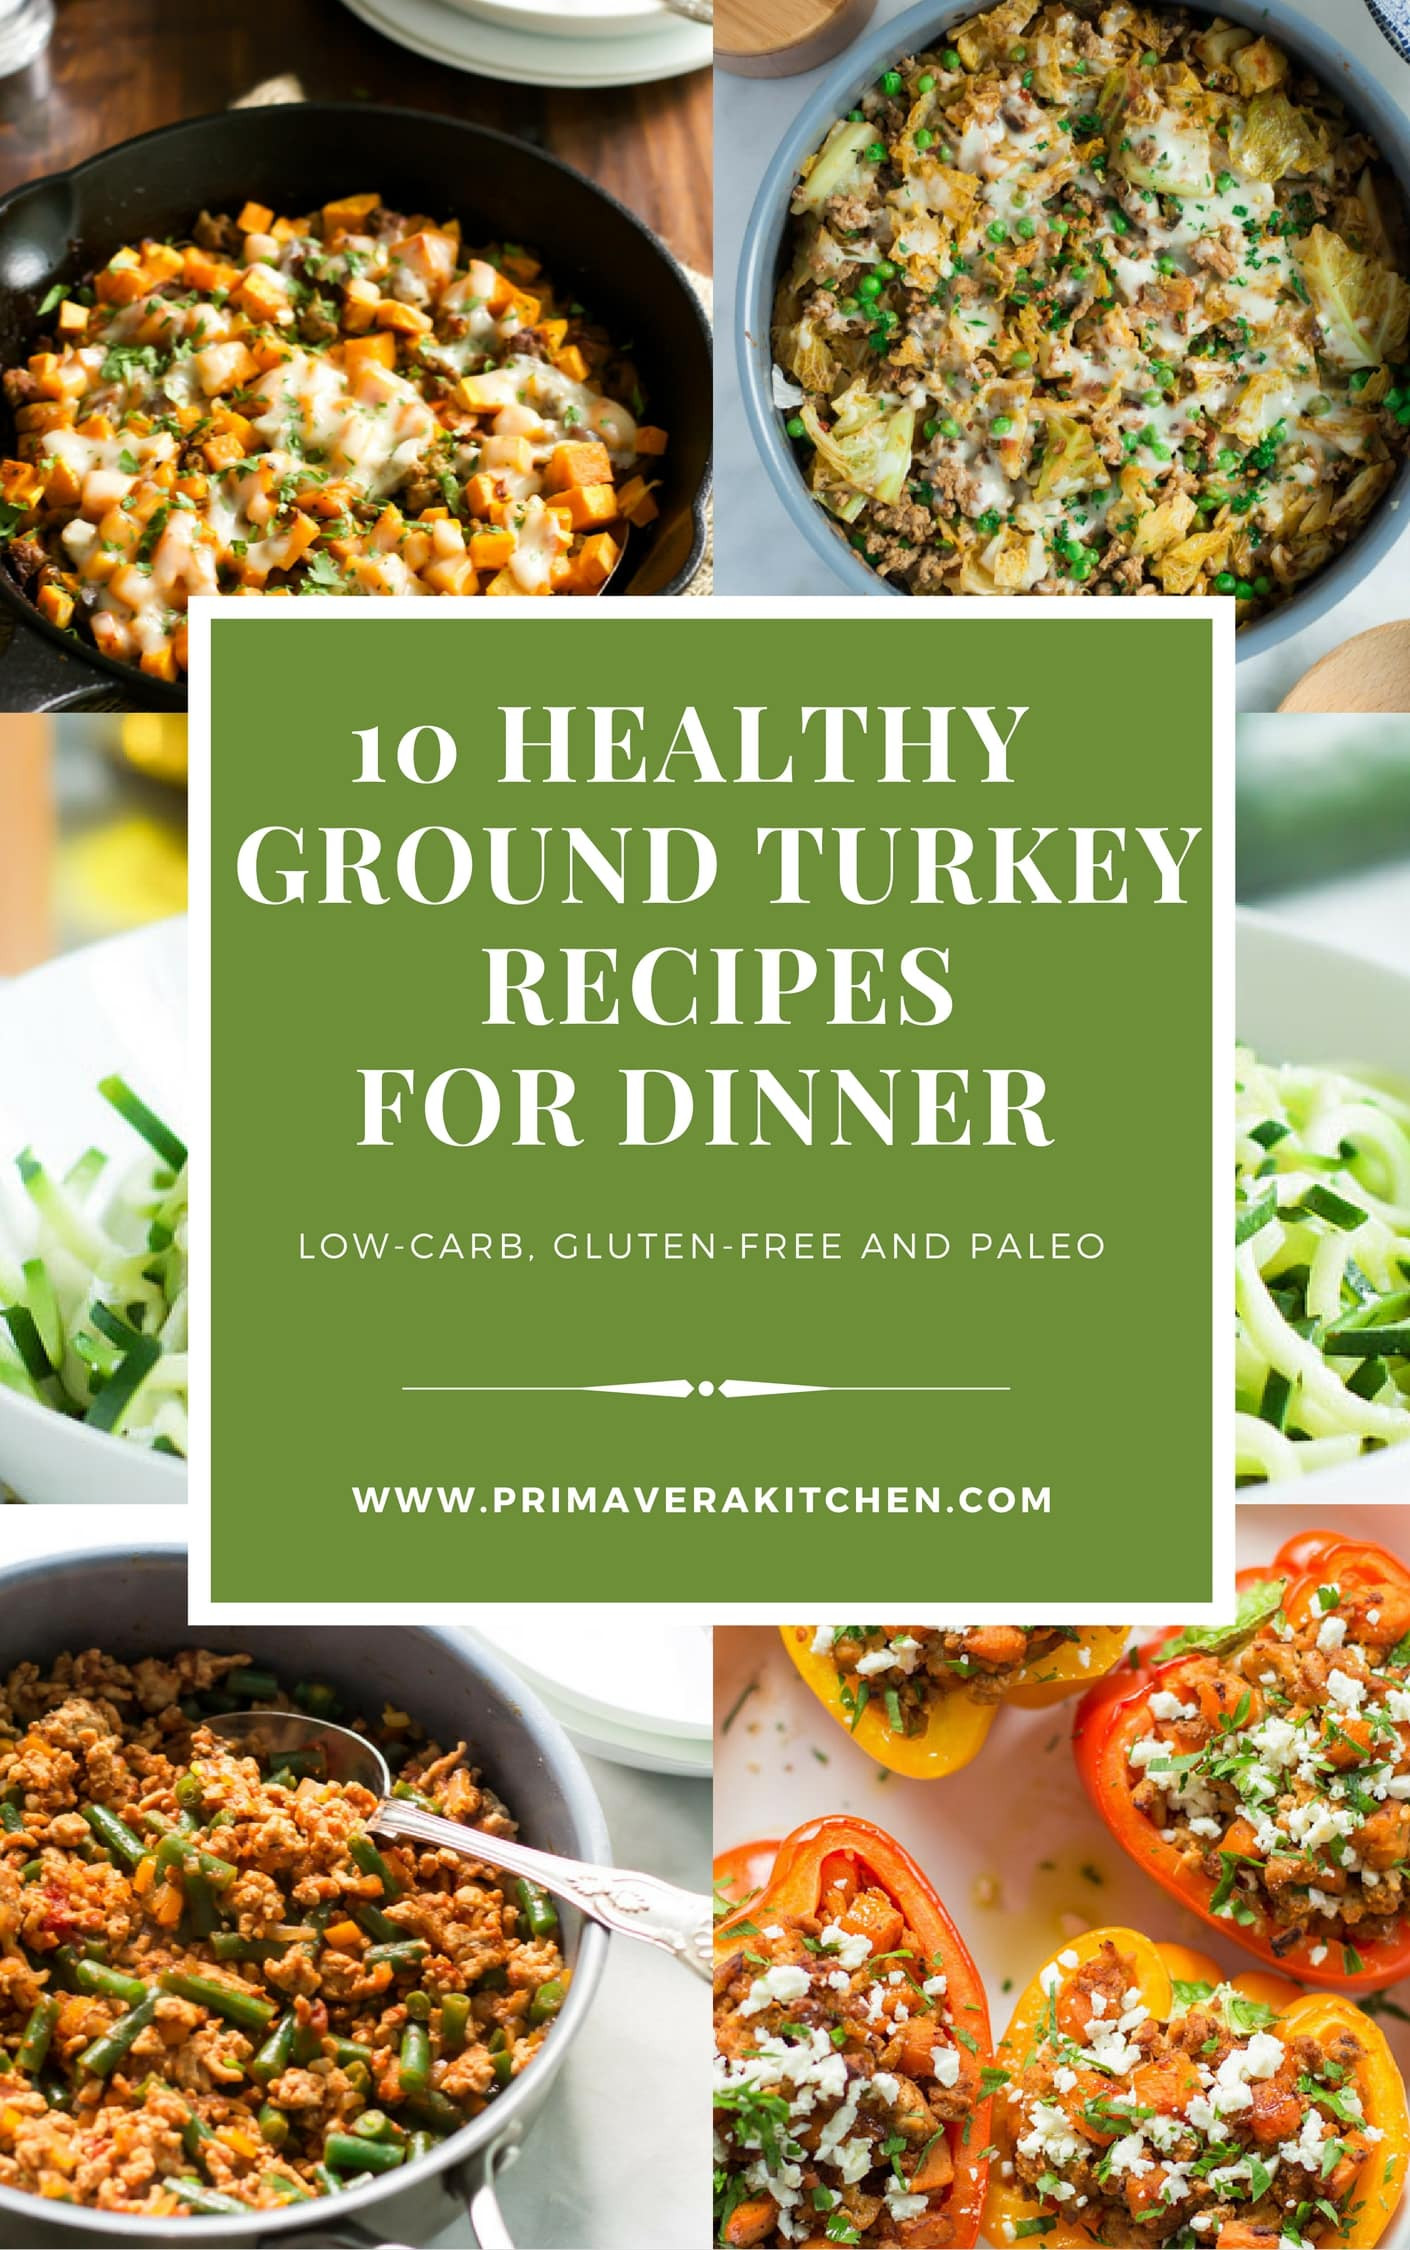 Healthy Dinner Ideas With Ground Turkey
 10 Healthy Ground Turkey Recipes for Dinner Primavera